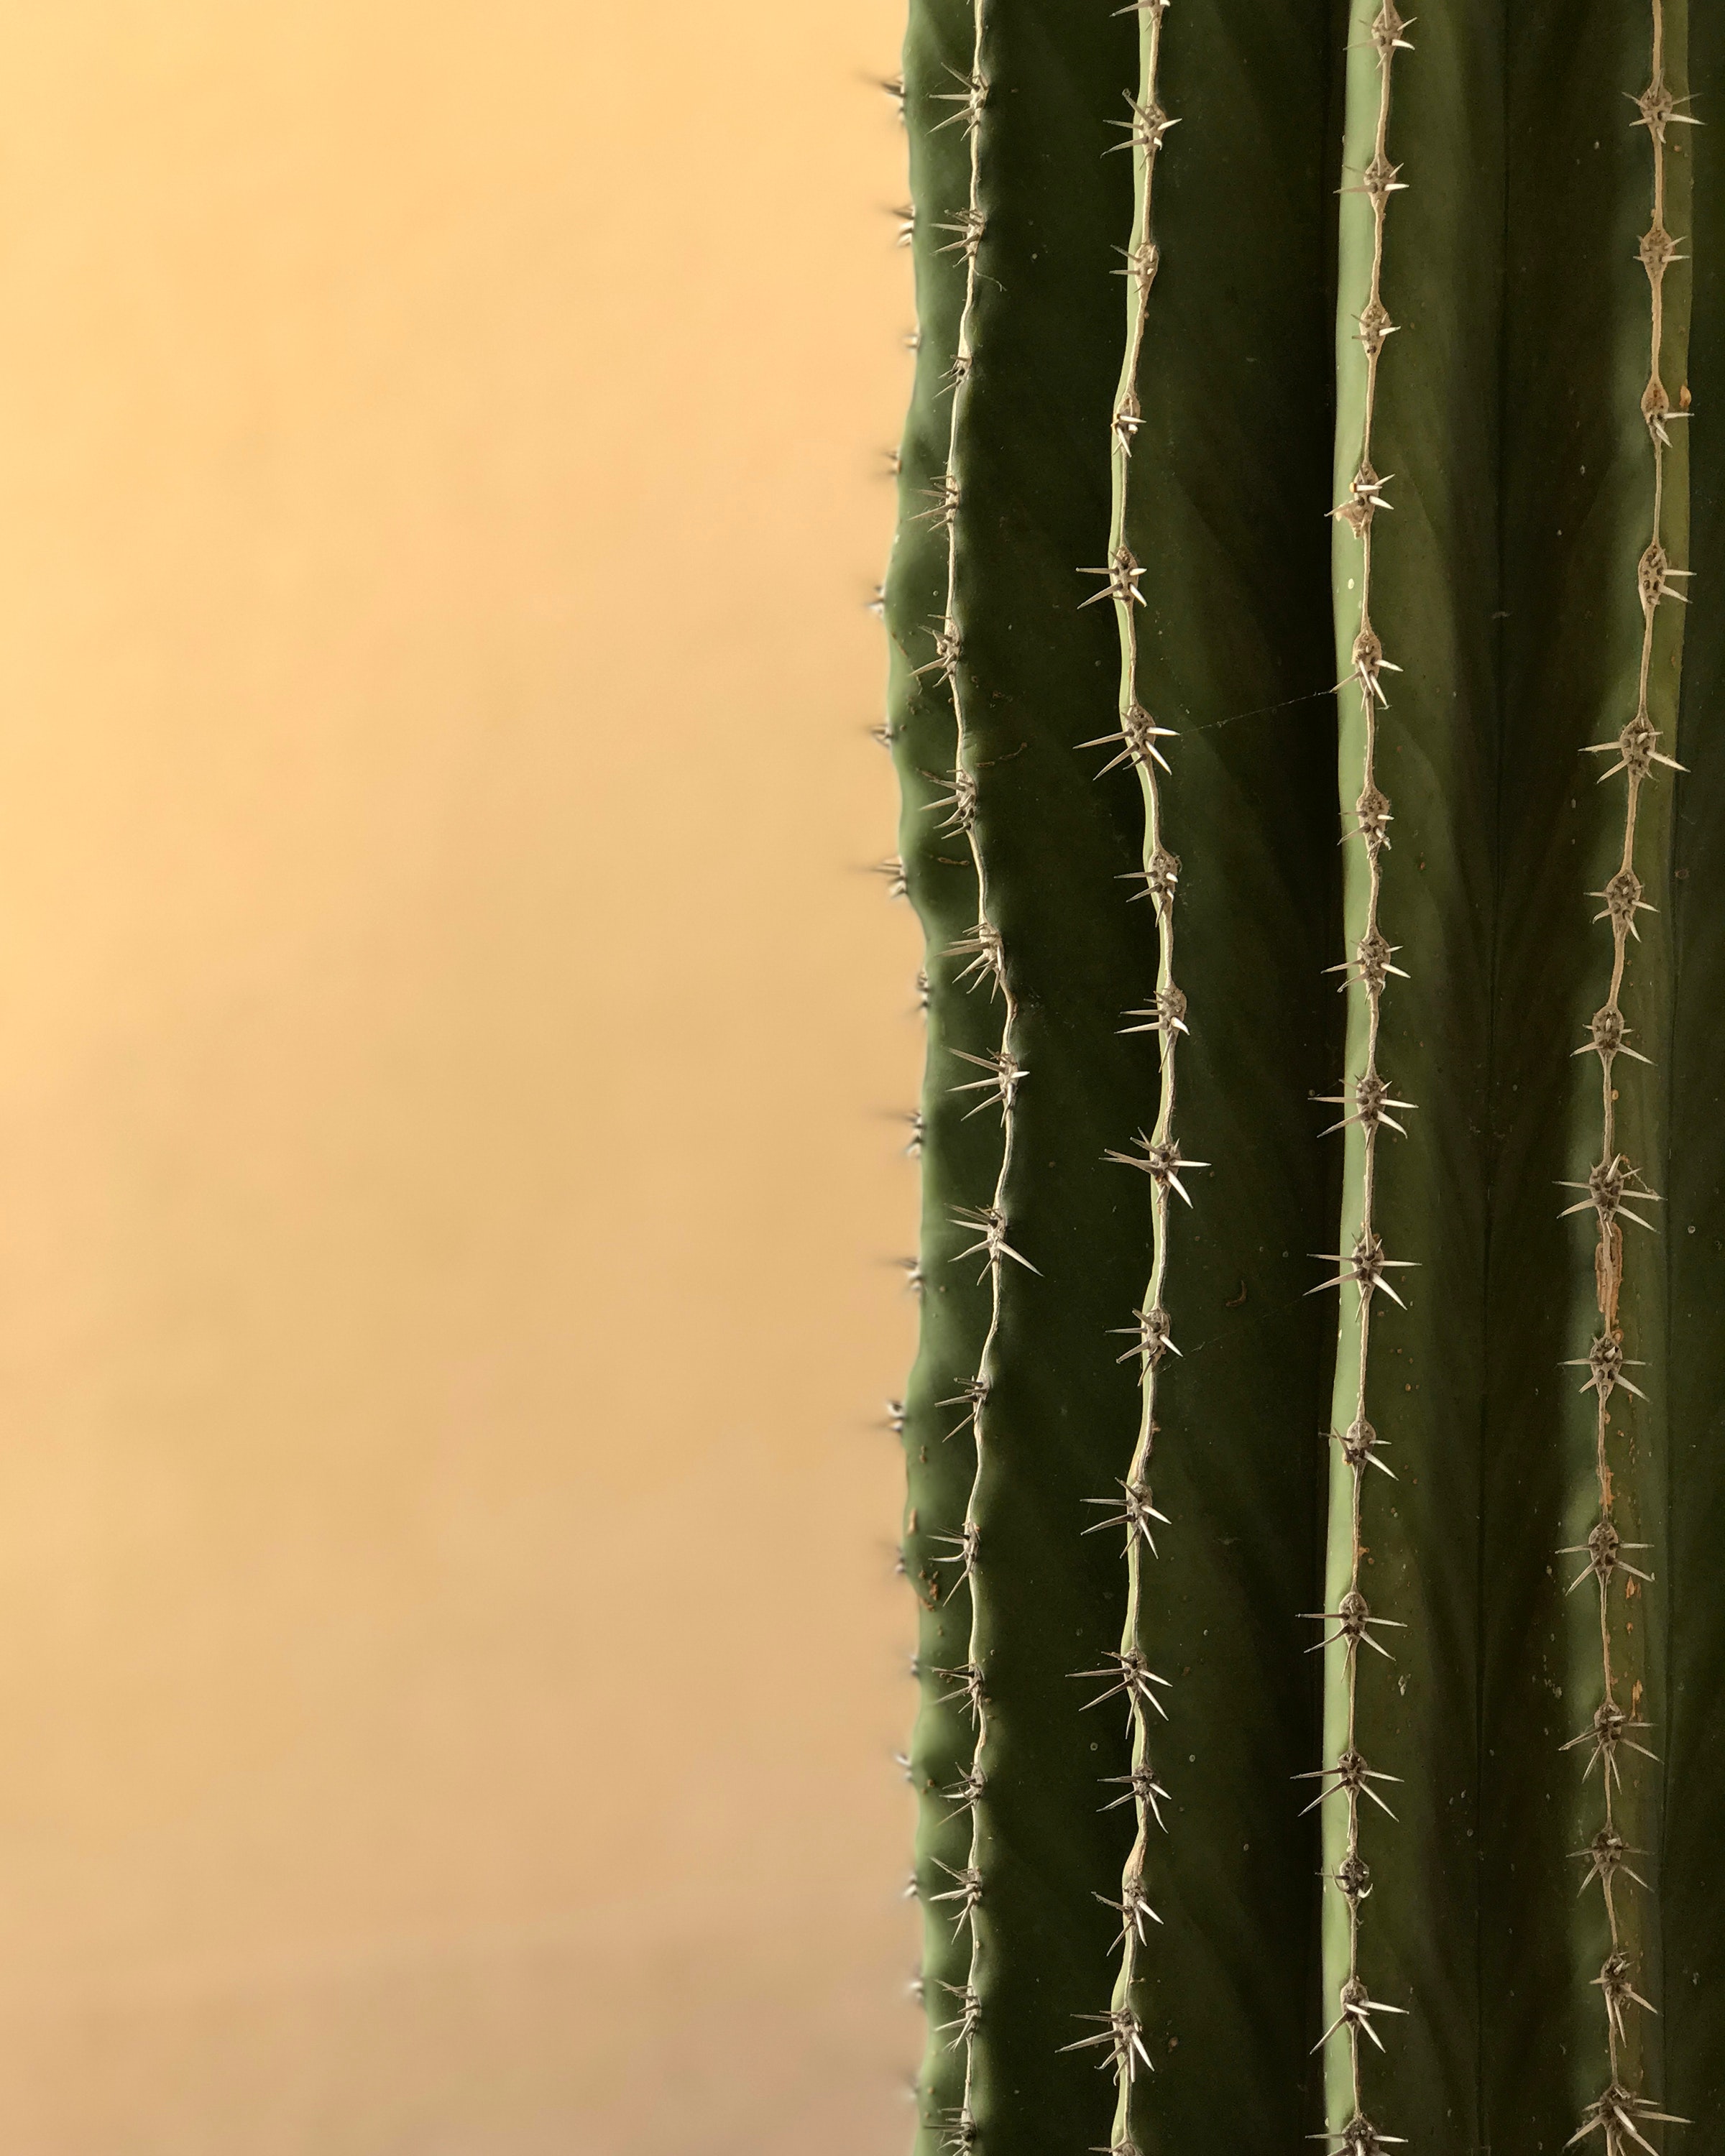 100+ Engaging Cactus Photos · Pexels · Free Stock Photos